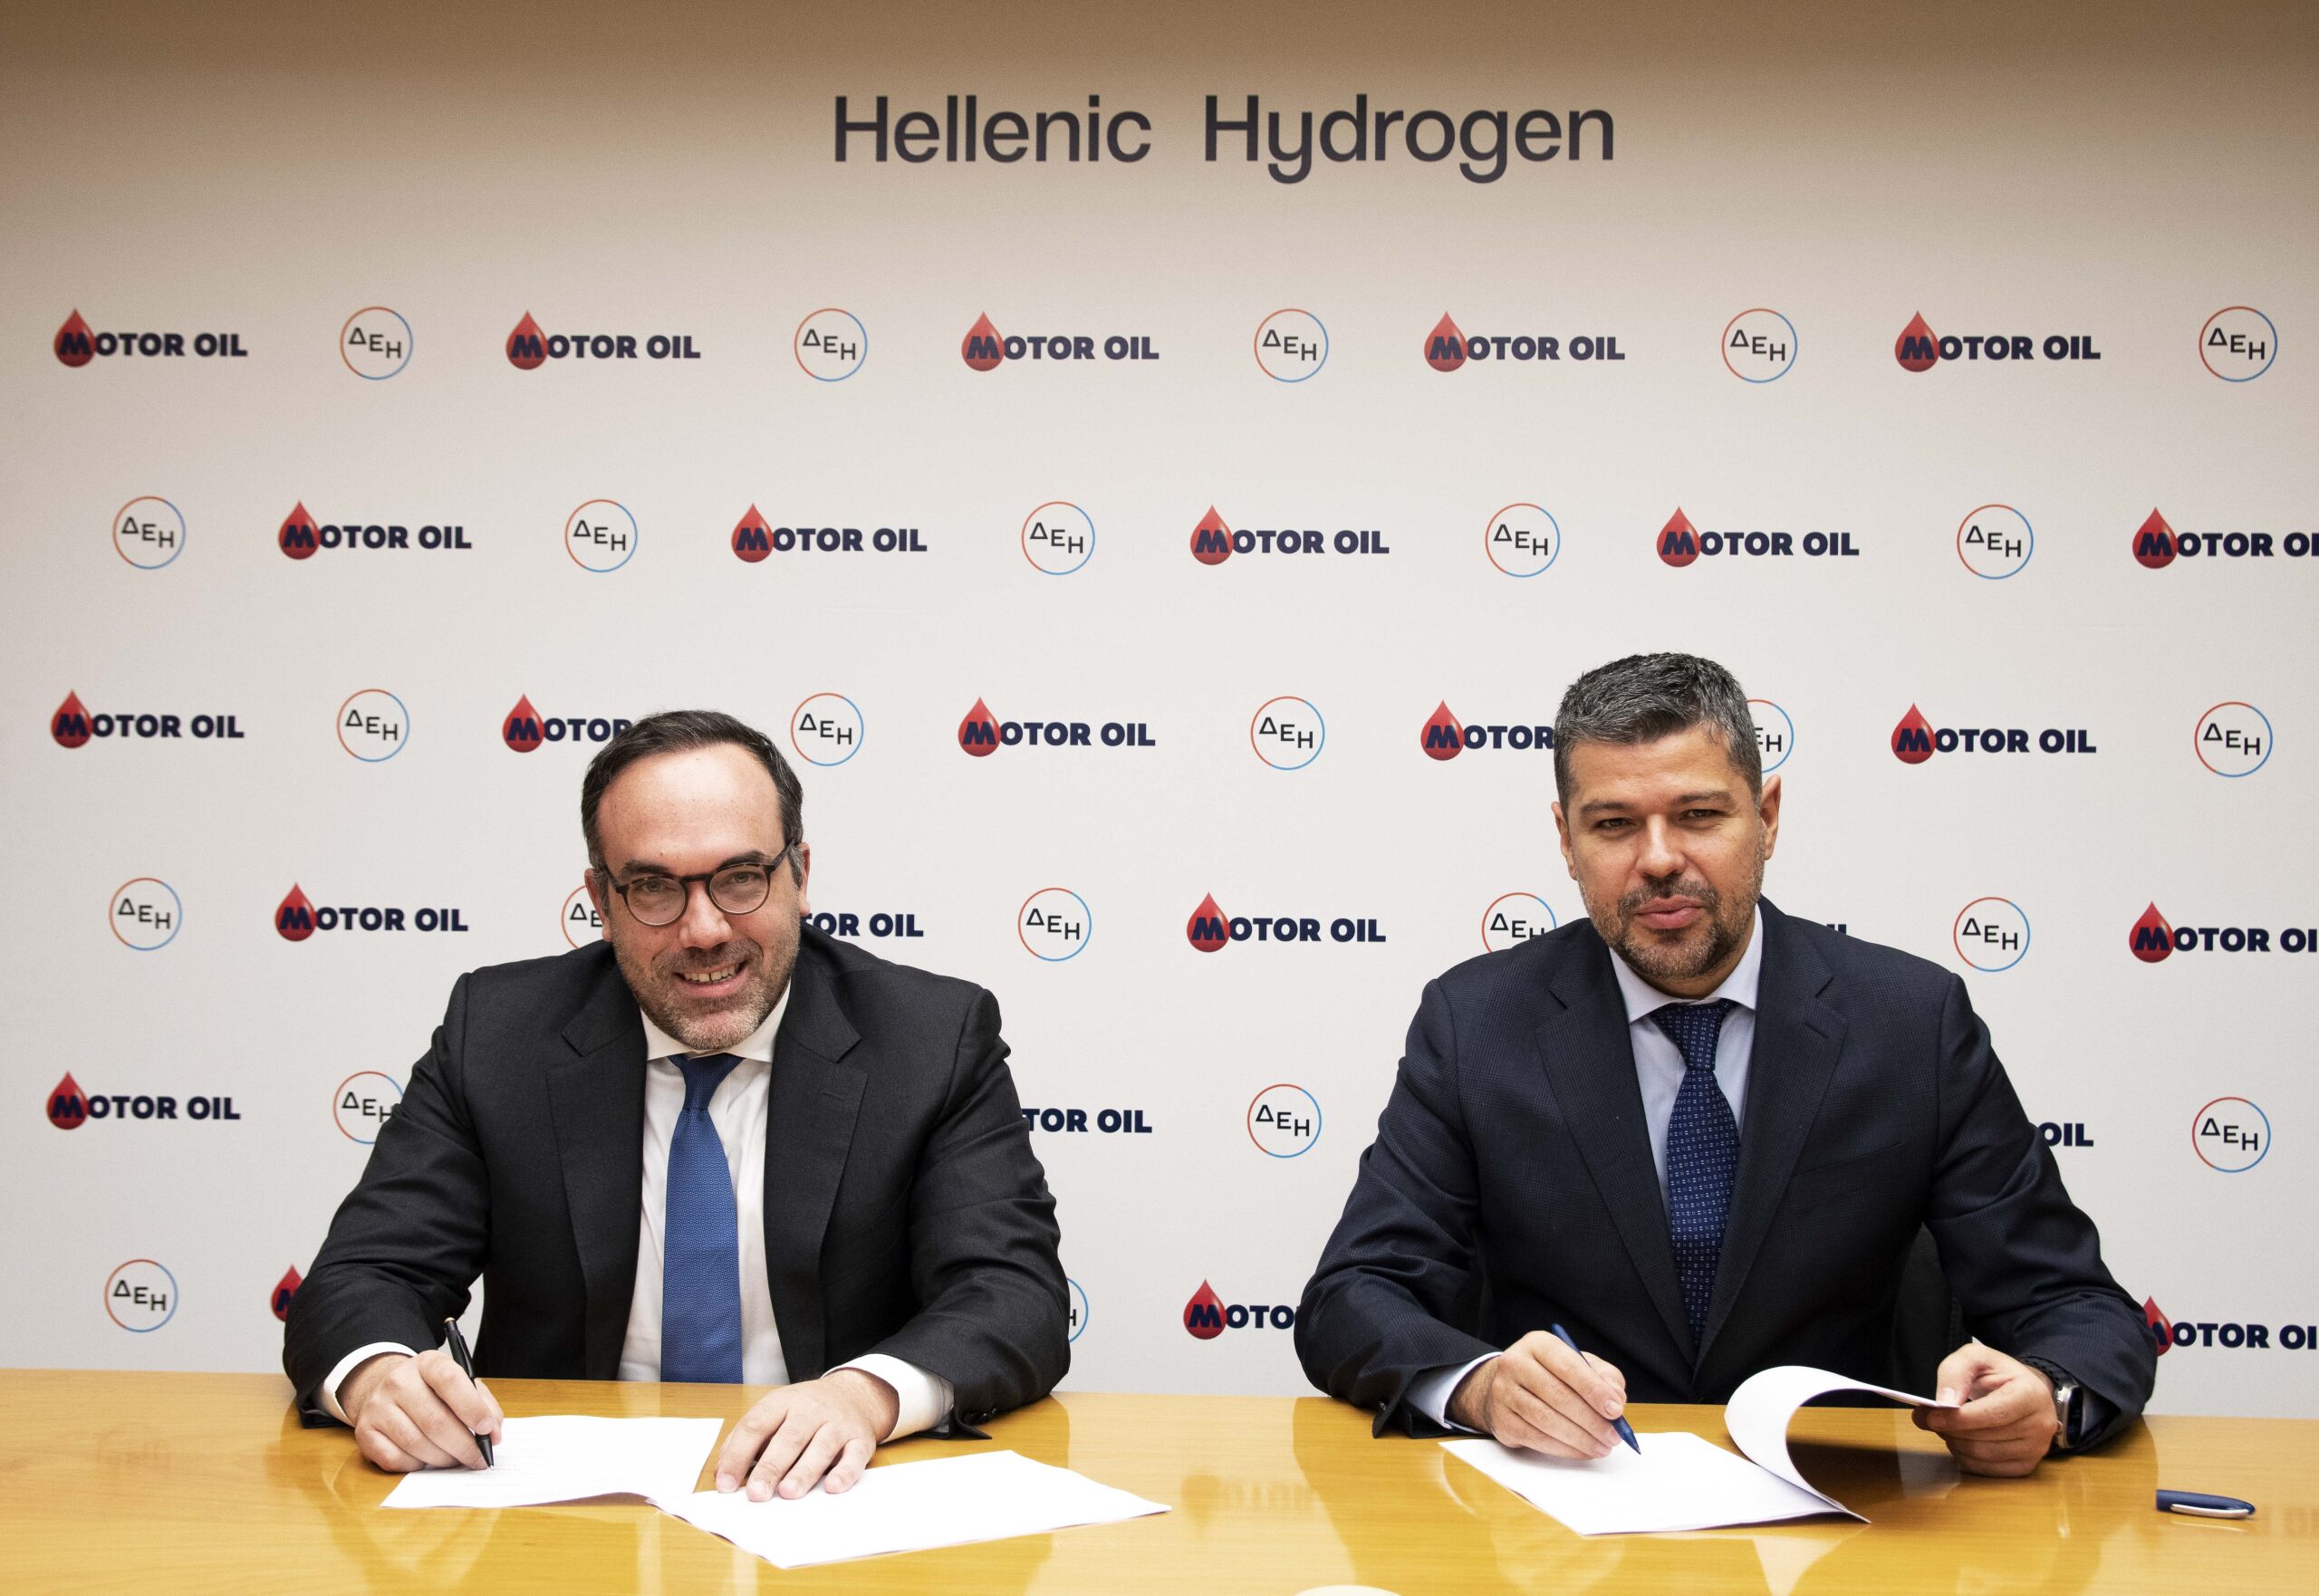 «Hellenic Hydrogen» Επίσημη σύσταση της κοινοπρακτικής εταιρείας των Μotor Oil και ΔEH